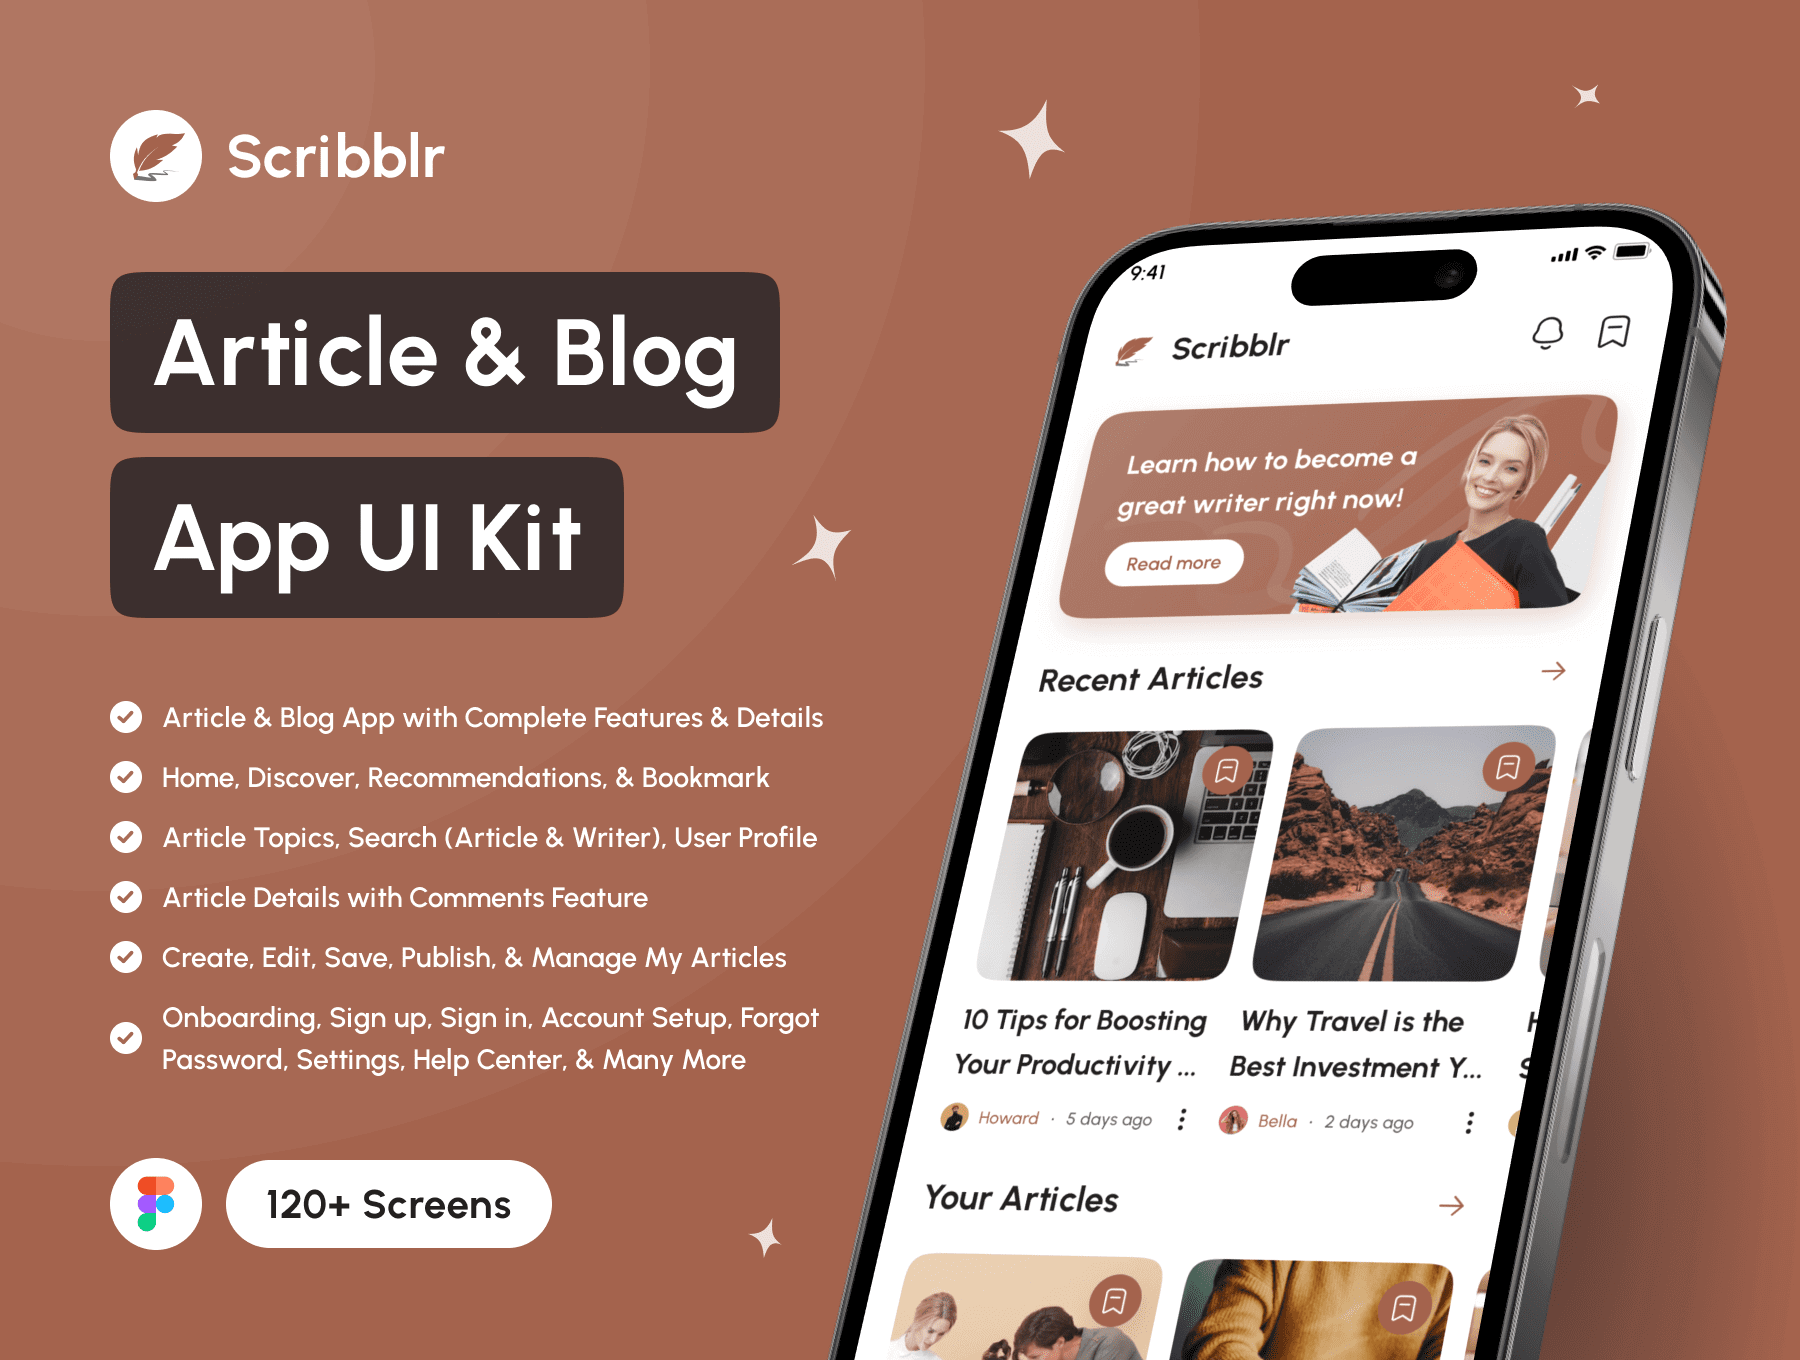 橙色高端旅游类移动应用程序UI模板在线预定旅游模板Scribblr – Article Blog App UI Kit插图